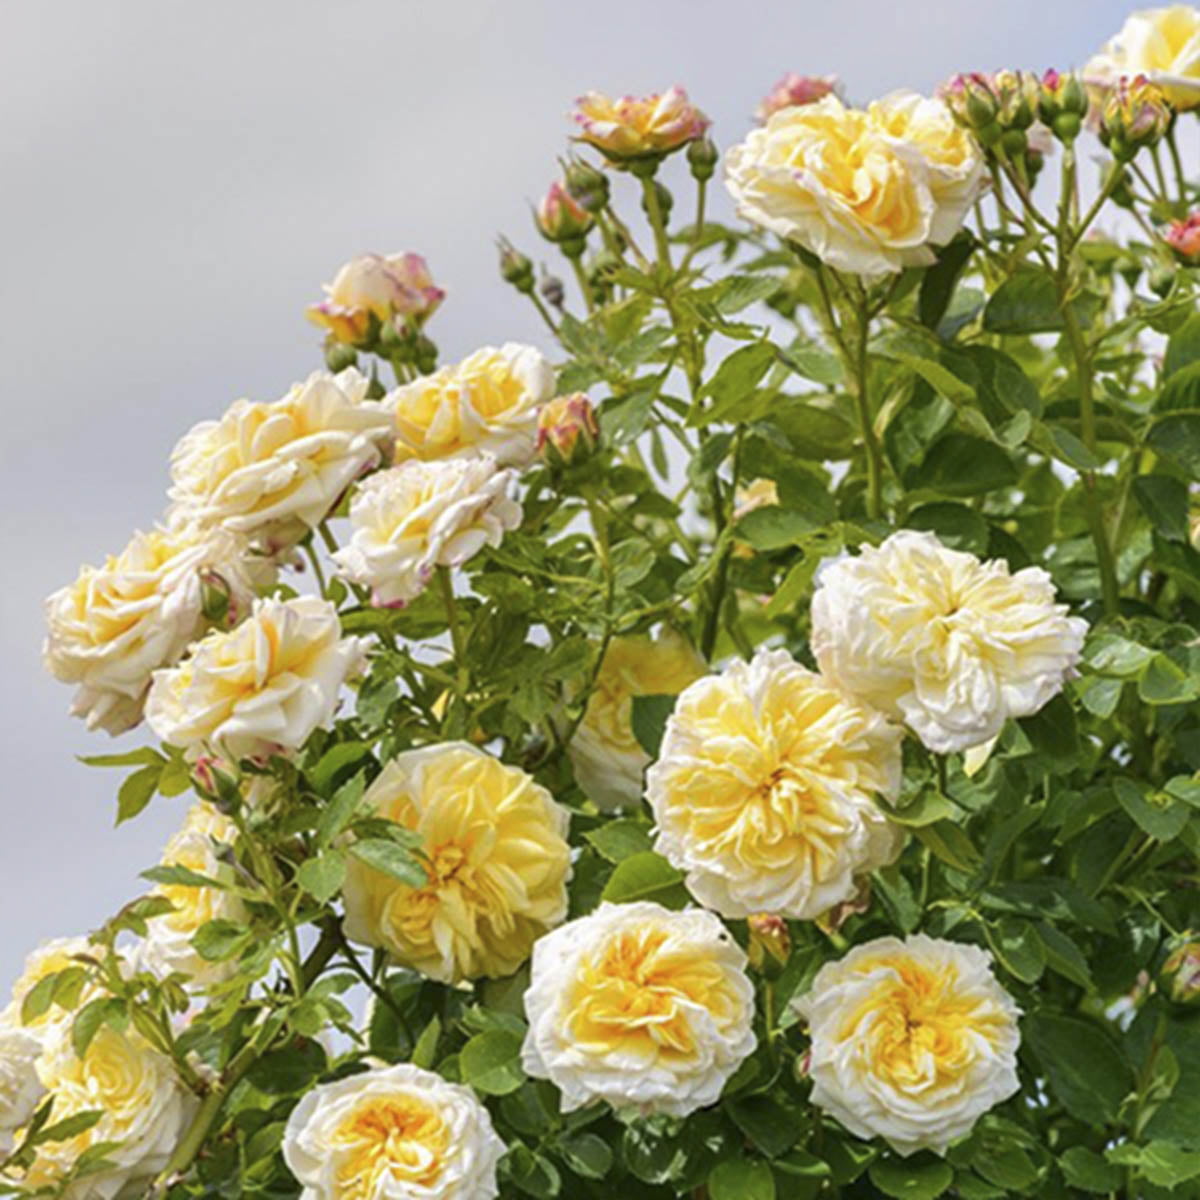 Blomstrer med aprikosoransje til rosa blomster med sterk duft. Tett og fyldig rose som kan bli ca 2 meter høy.